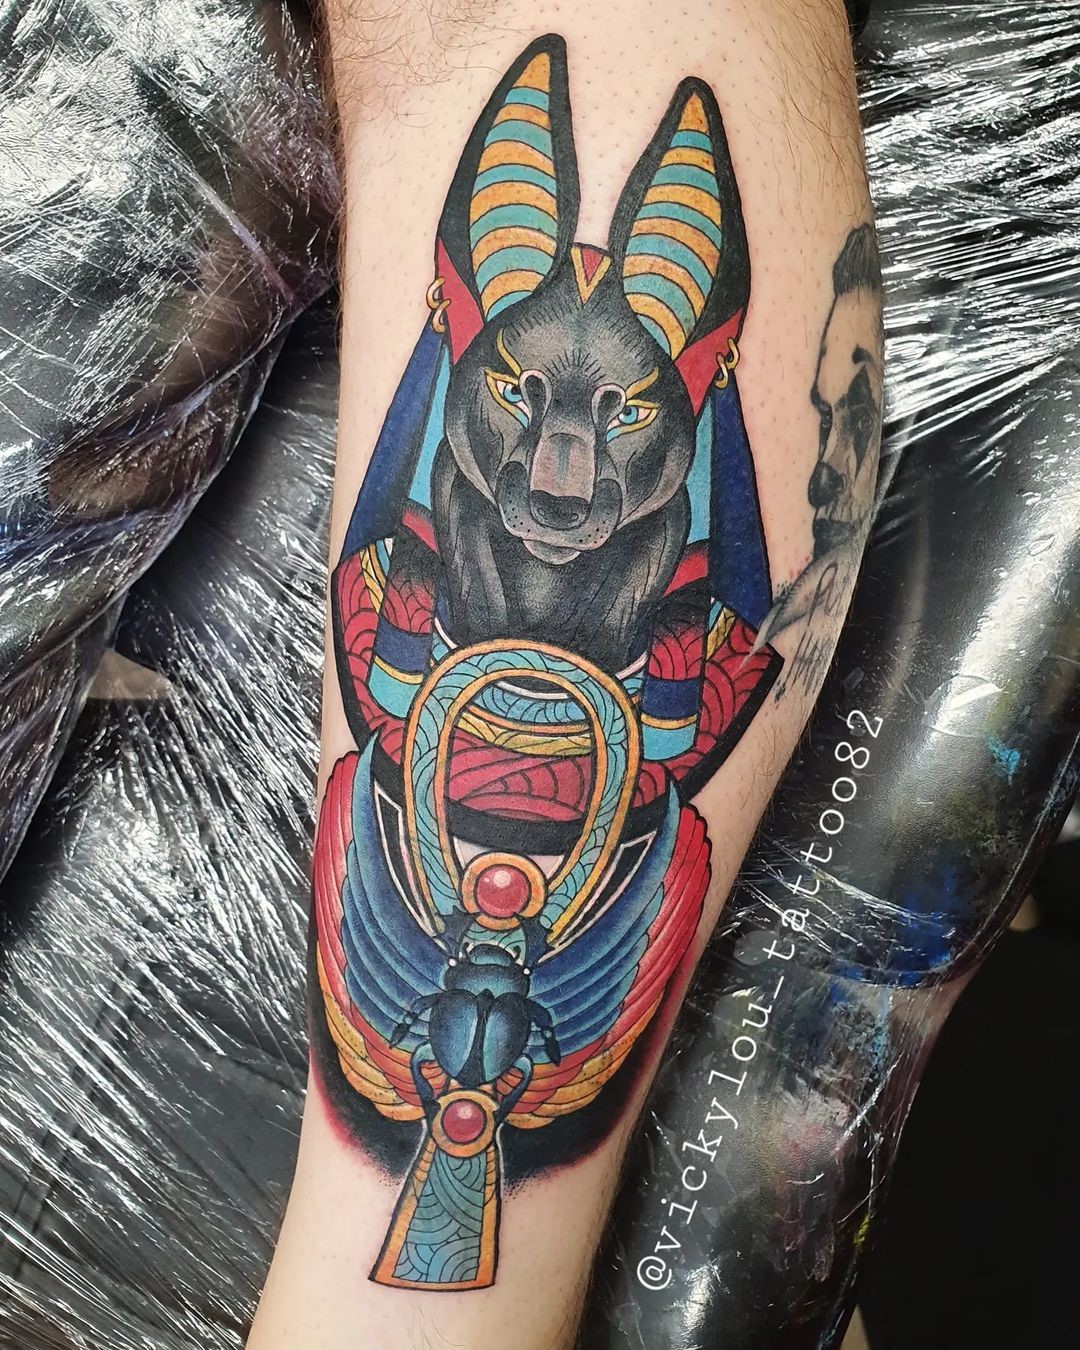 Colorful & Unique Anubis Tattoo